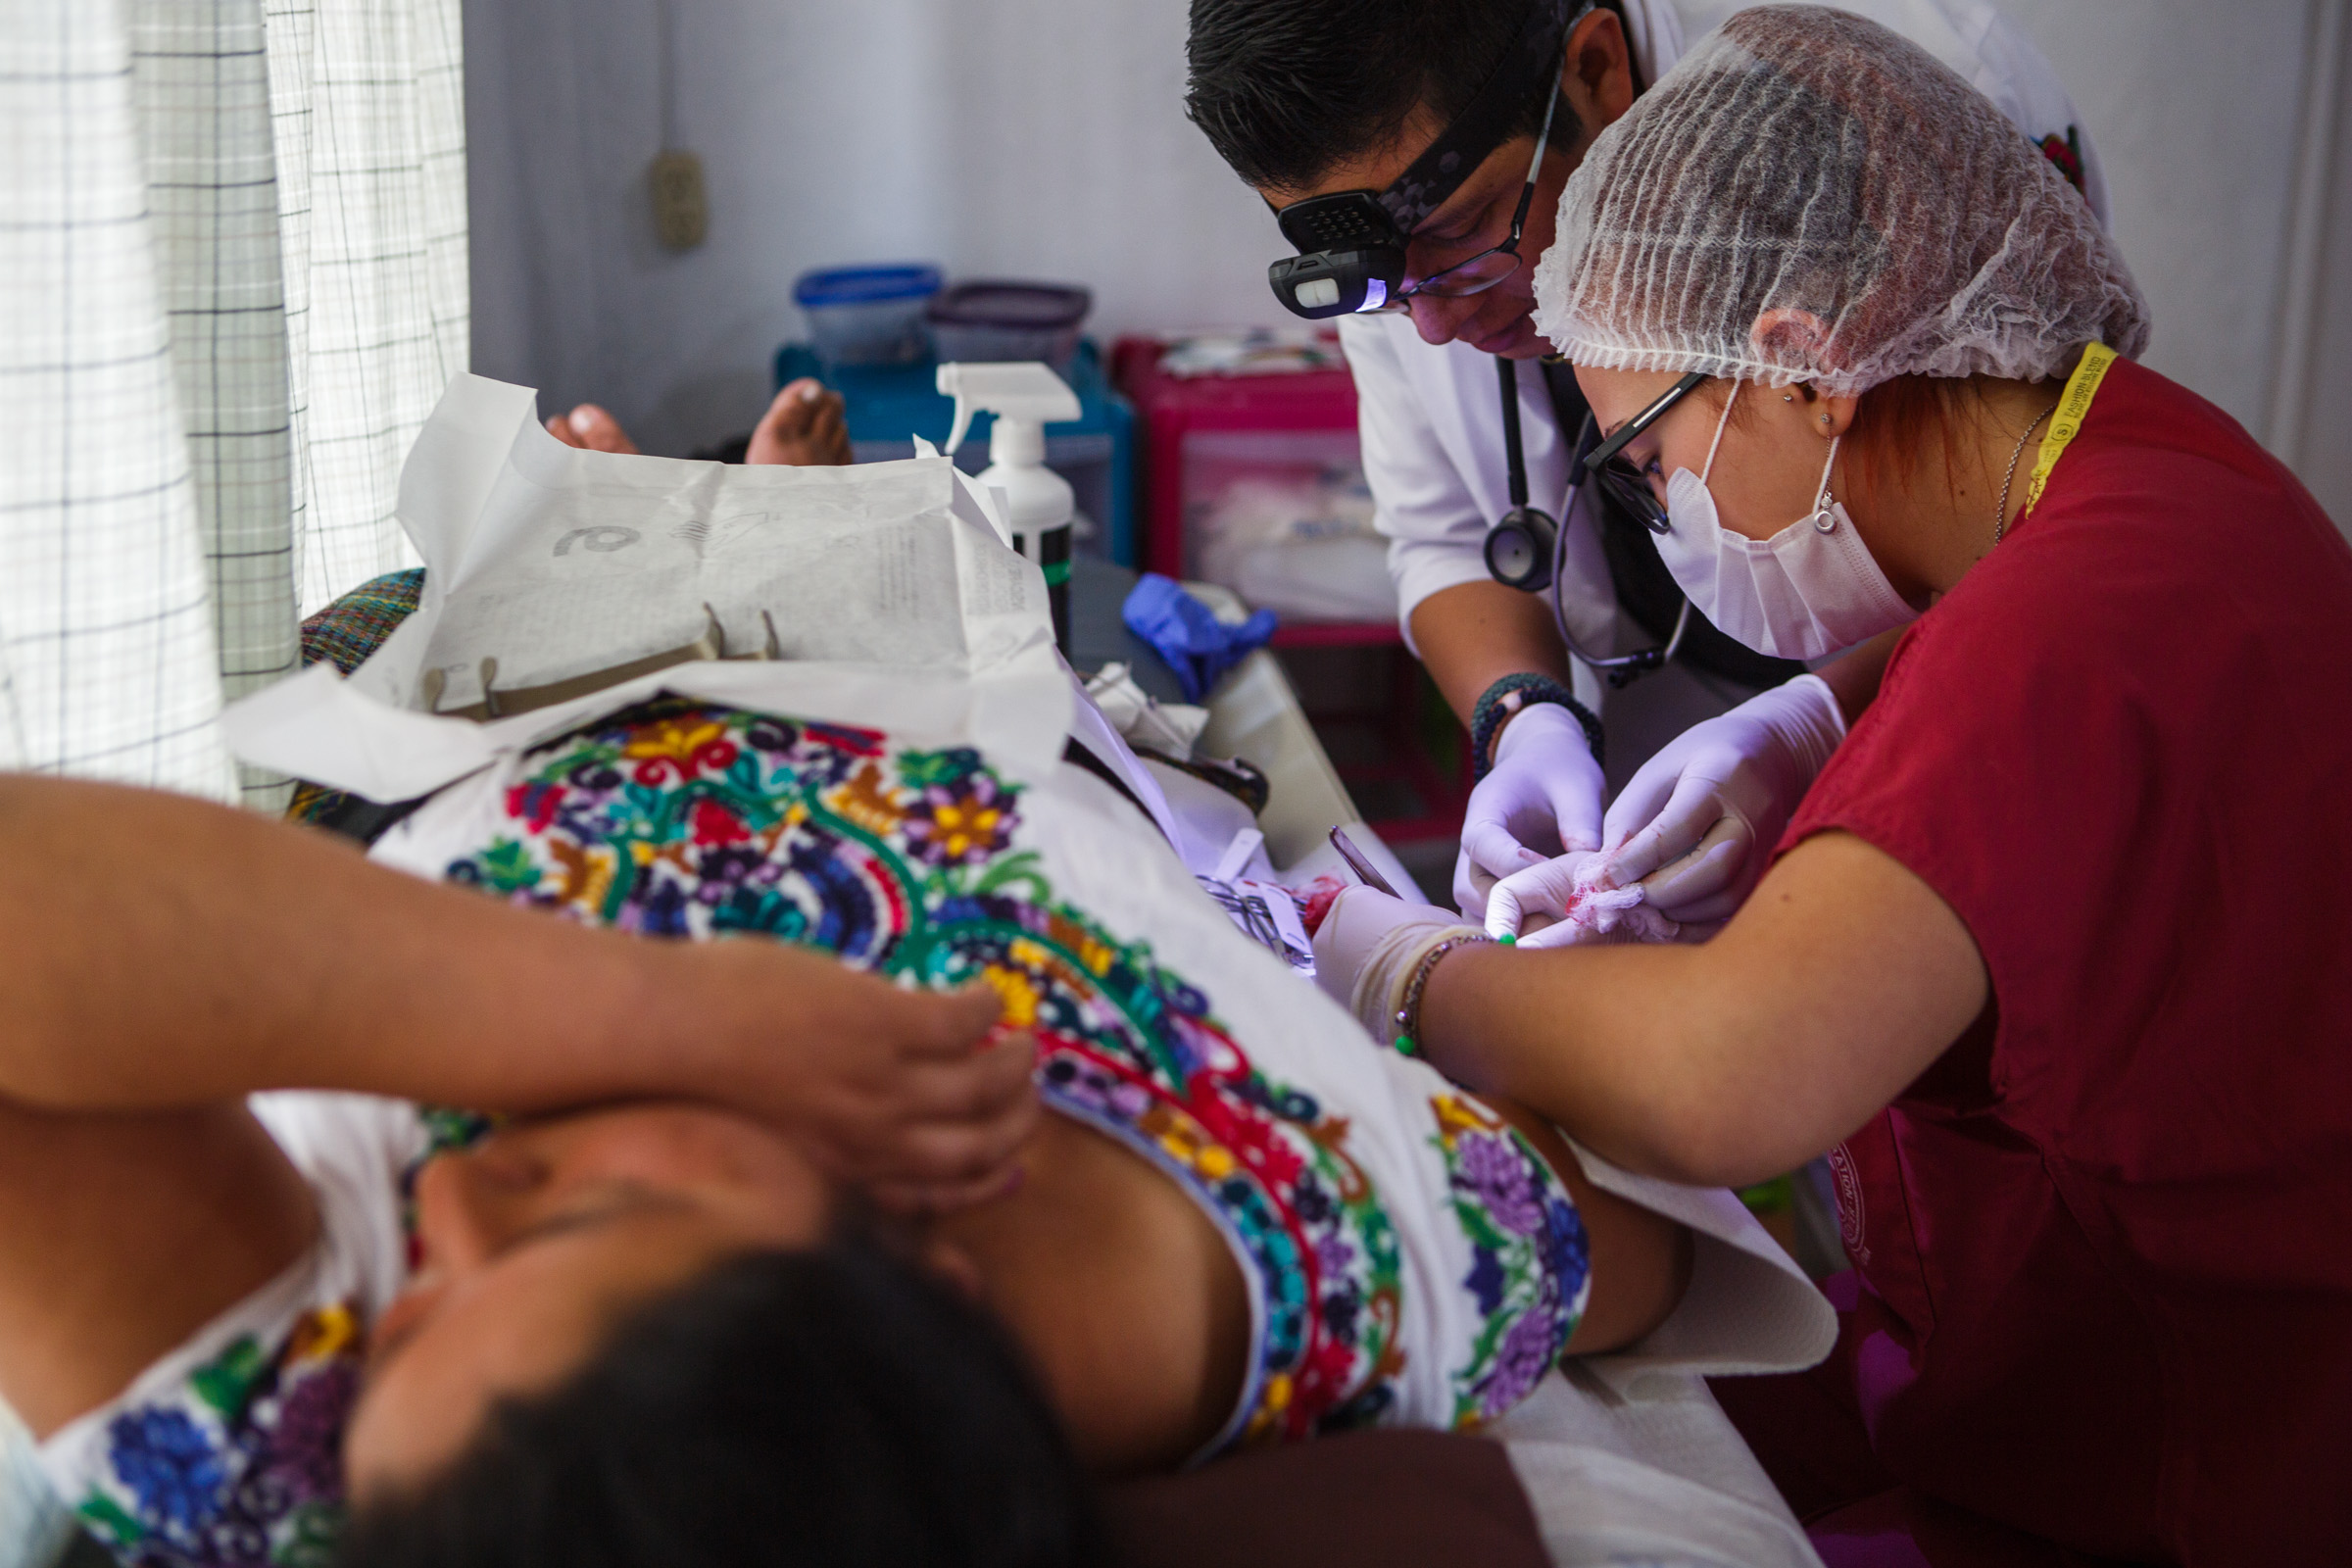 Válikova atende paciente indígena na clínica (Foto: Arquivo pessoal)